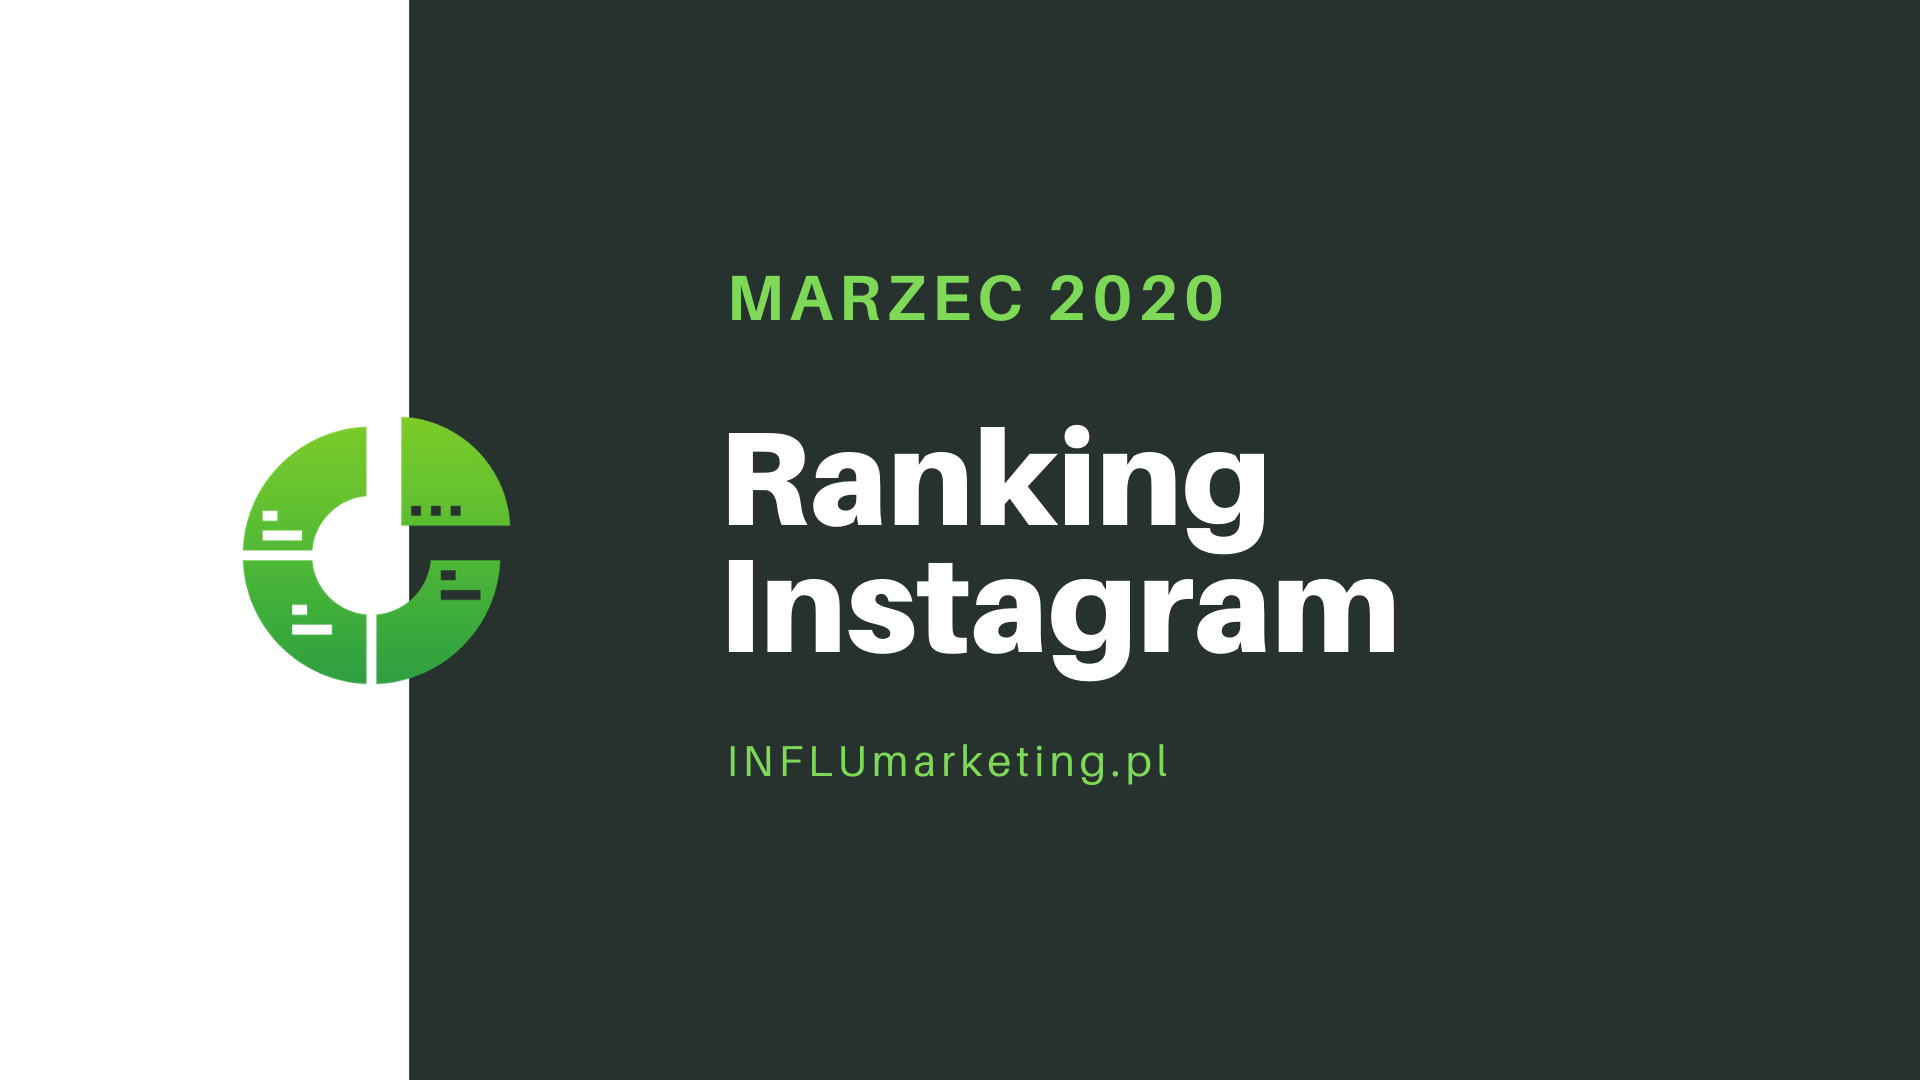 Ranking Instagram 2020 Marzec front